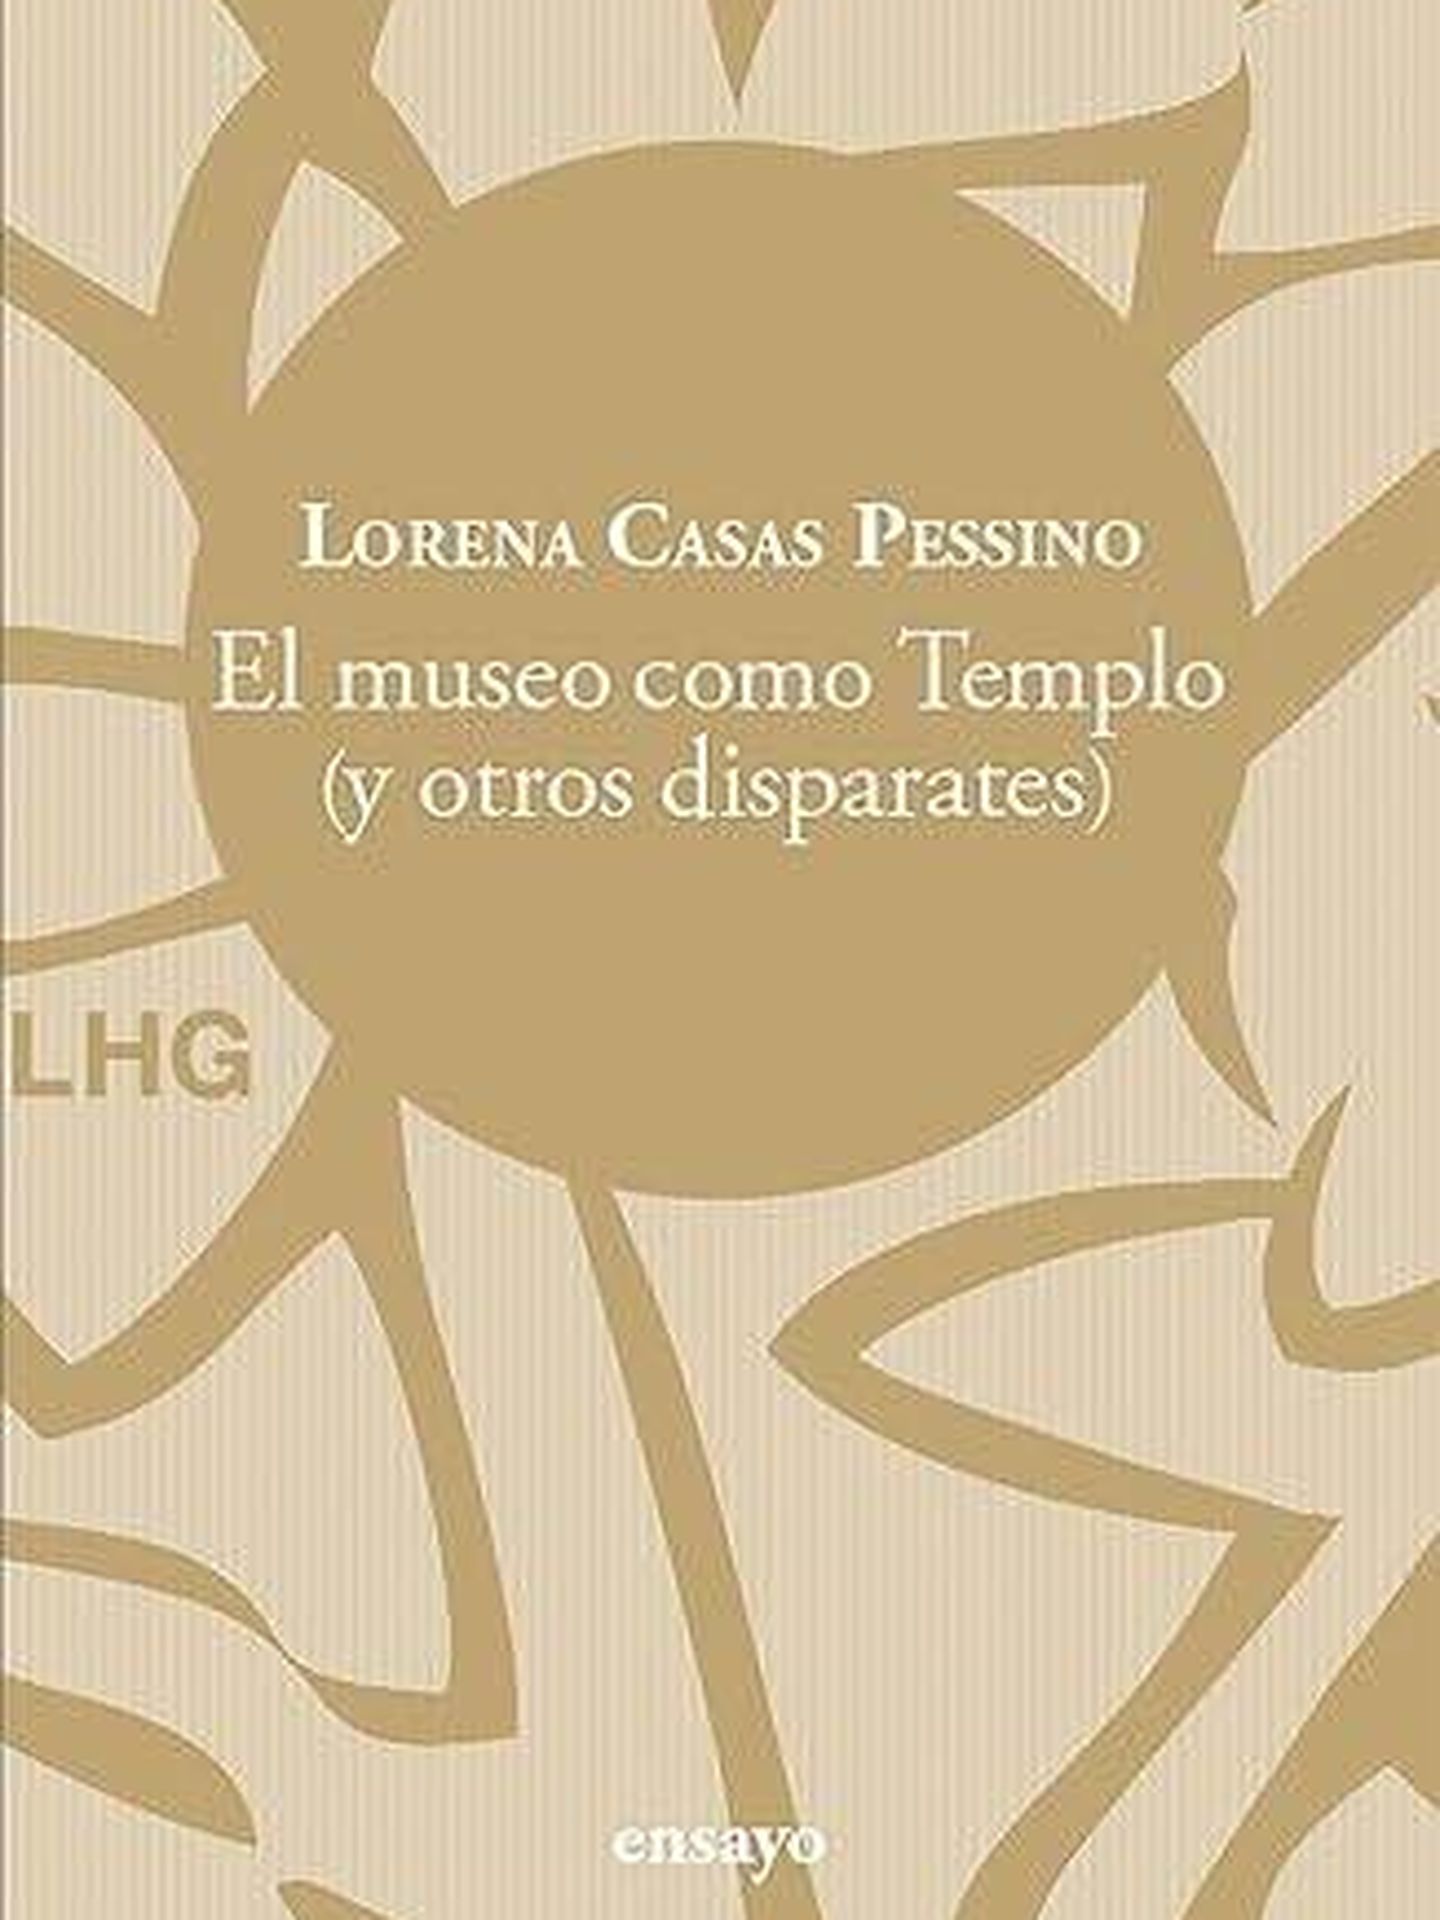 Portada de 'El museo como Templo (y otros disparates)', de Lorena Casas Pessino. 